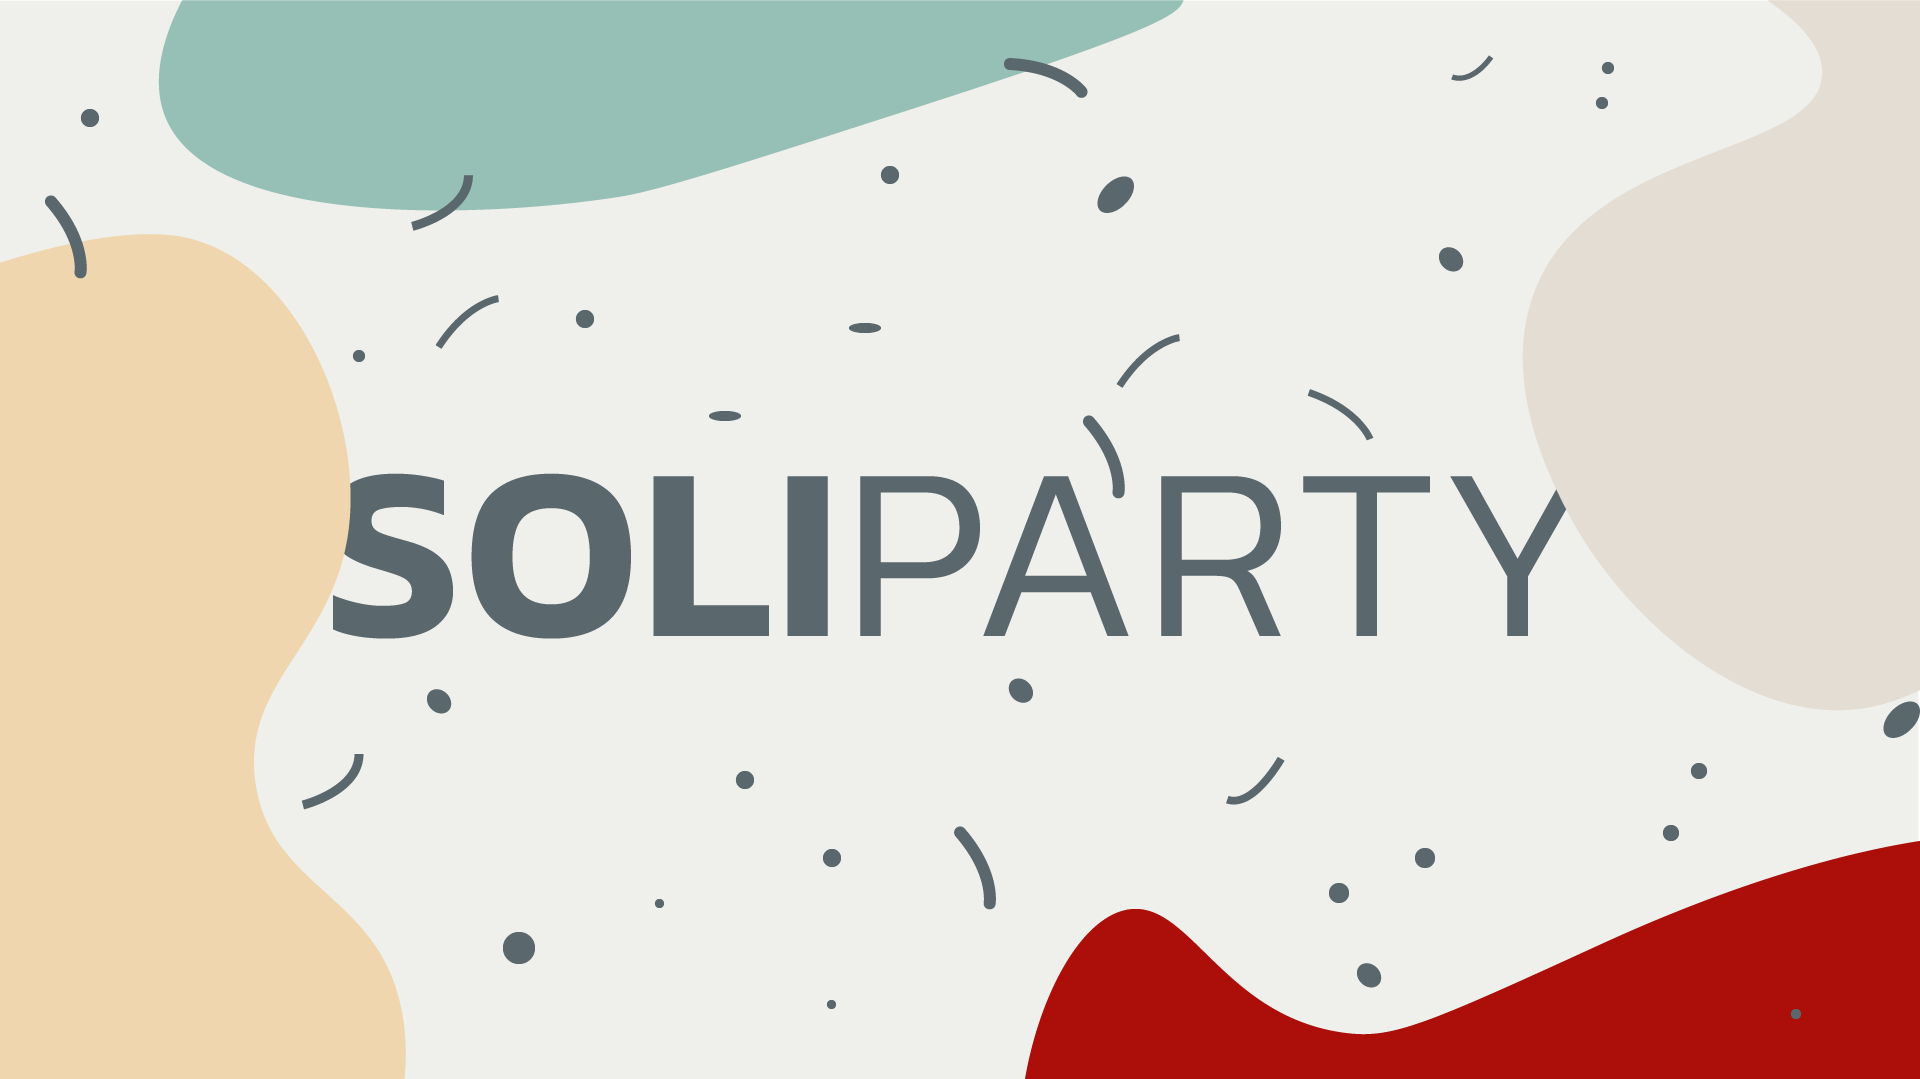 Soliparty für solidarische Geflüchtetenarbeit